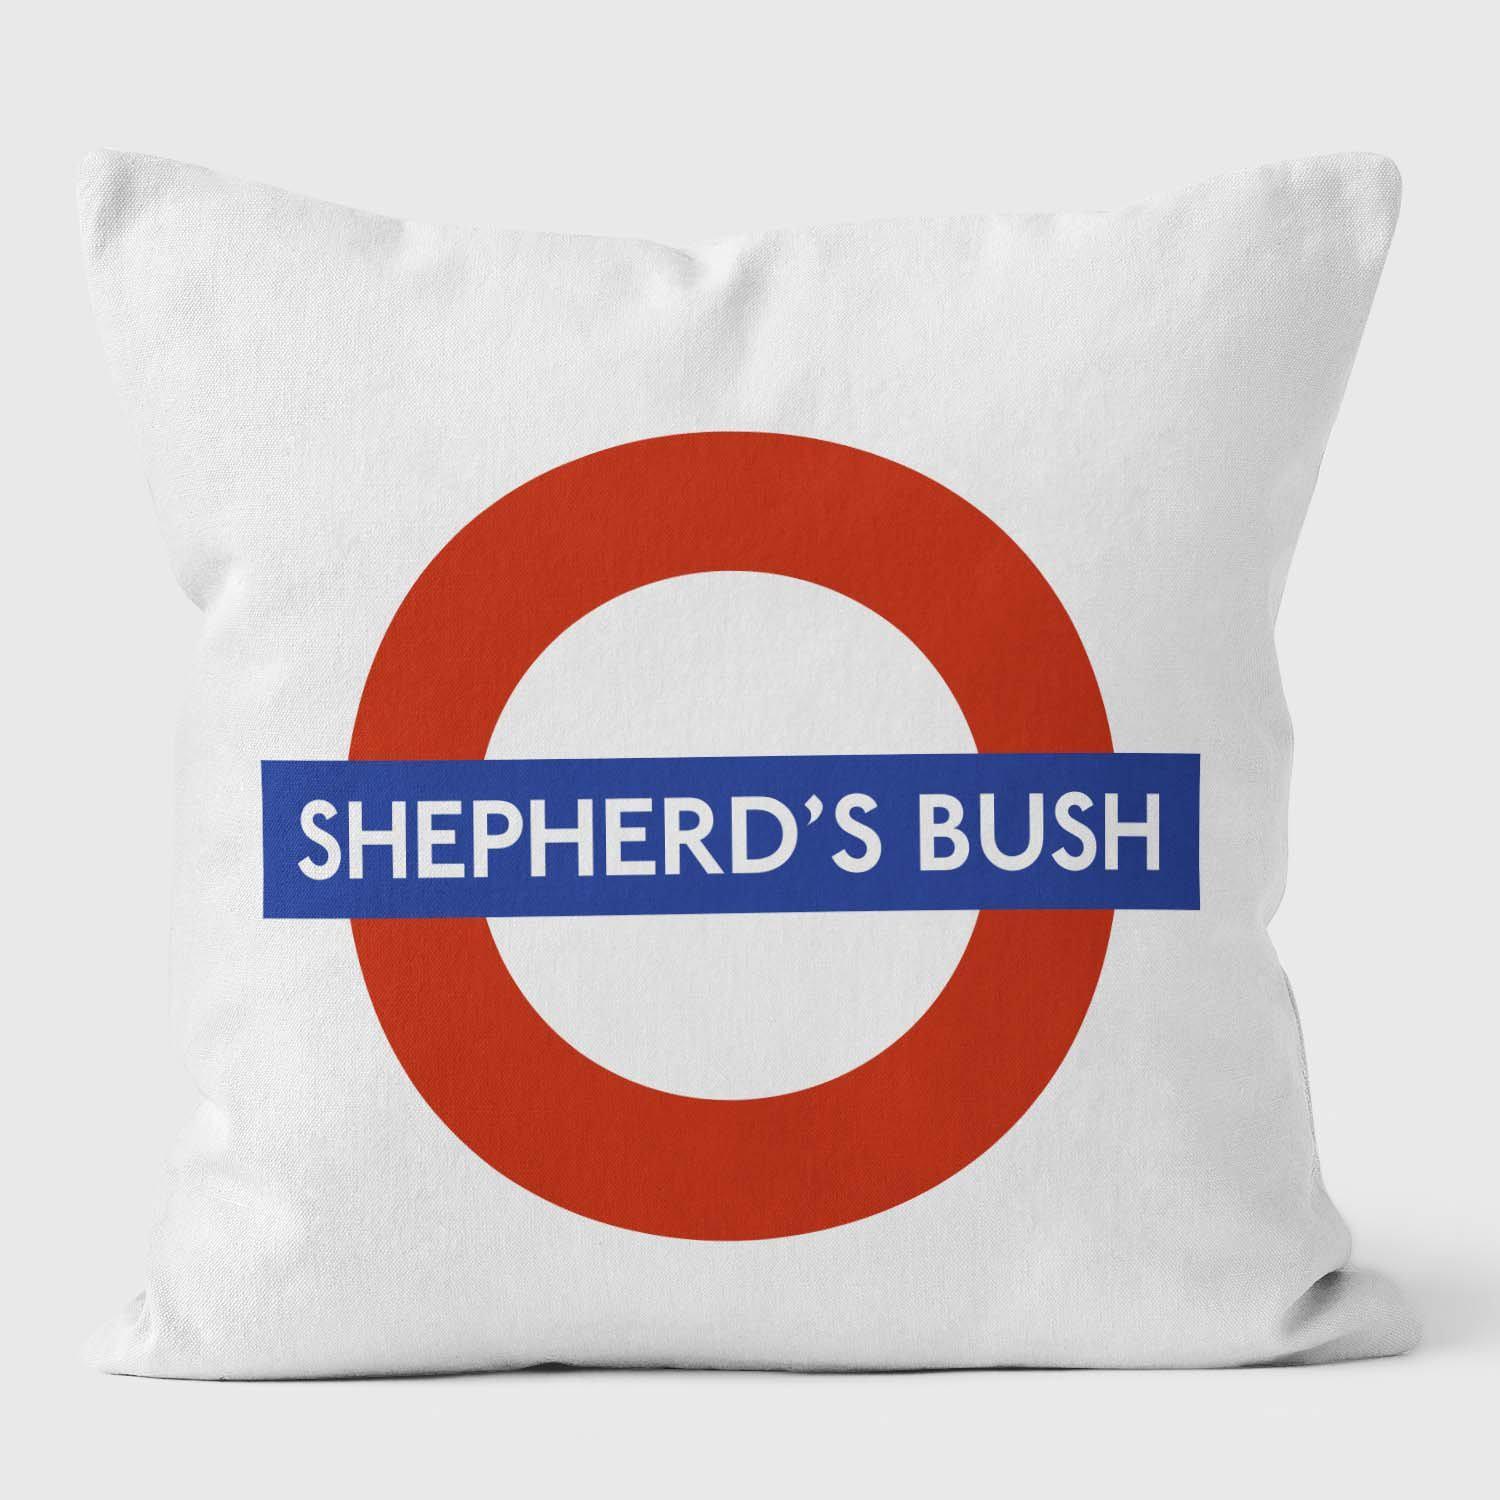 Shepherds Bush London Underground Tube Station Roundel Cushion - Handmade Cushions UK - WeLoveCushions